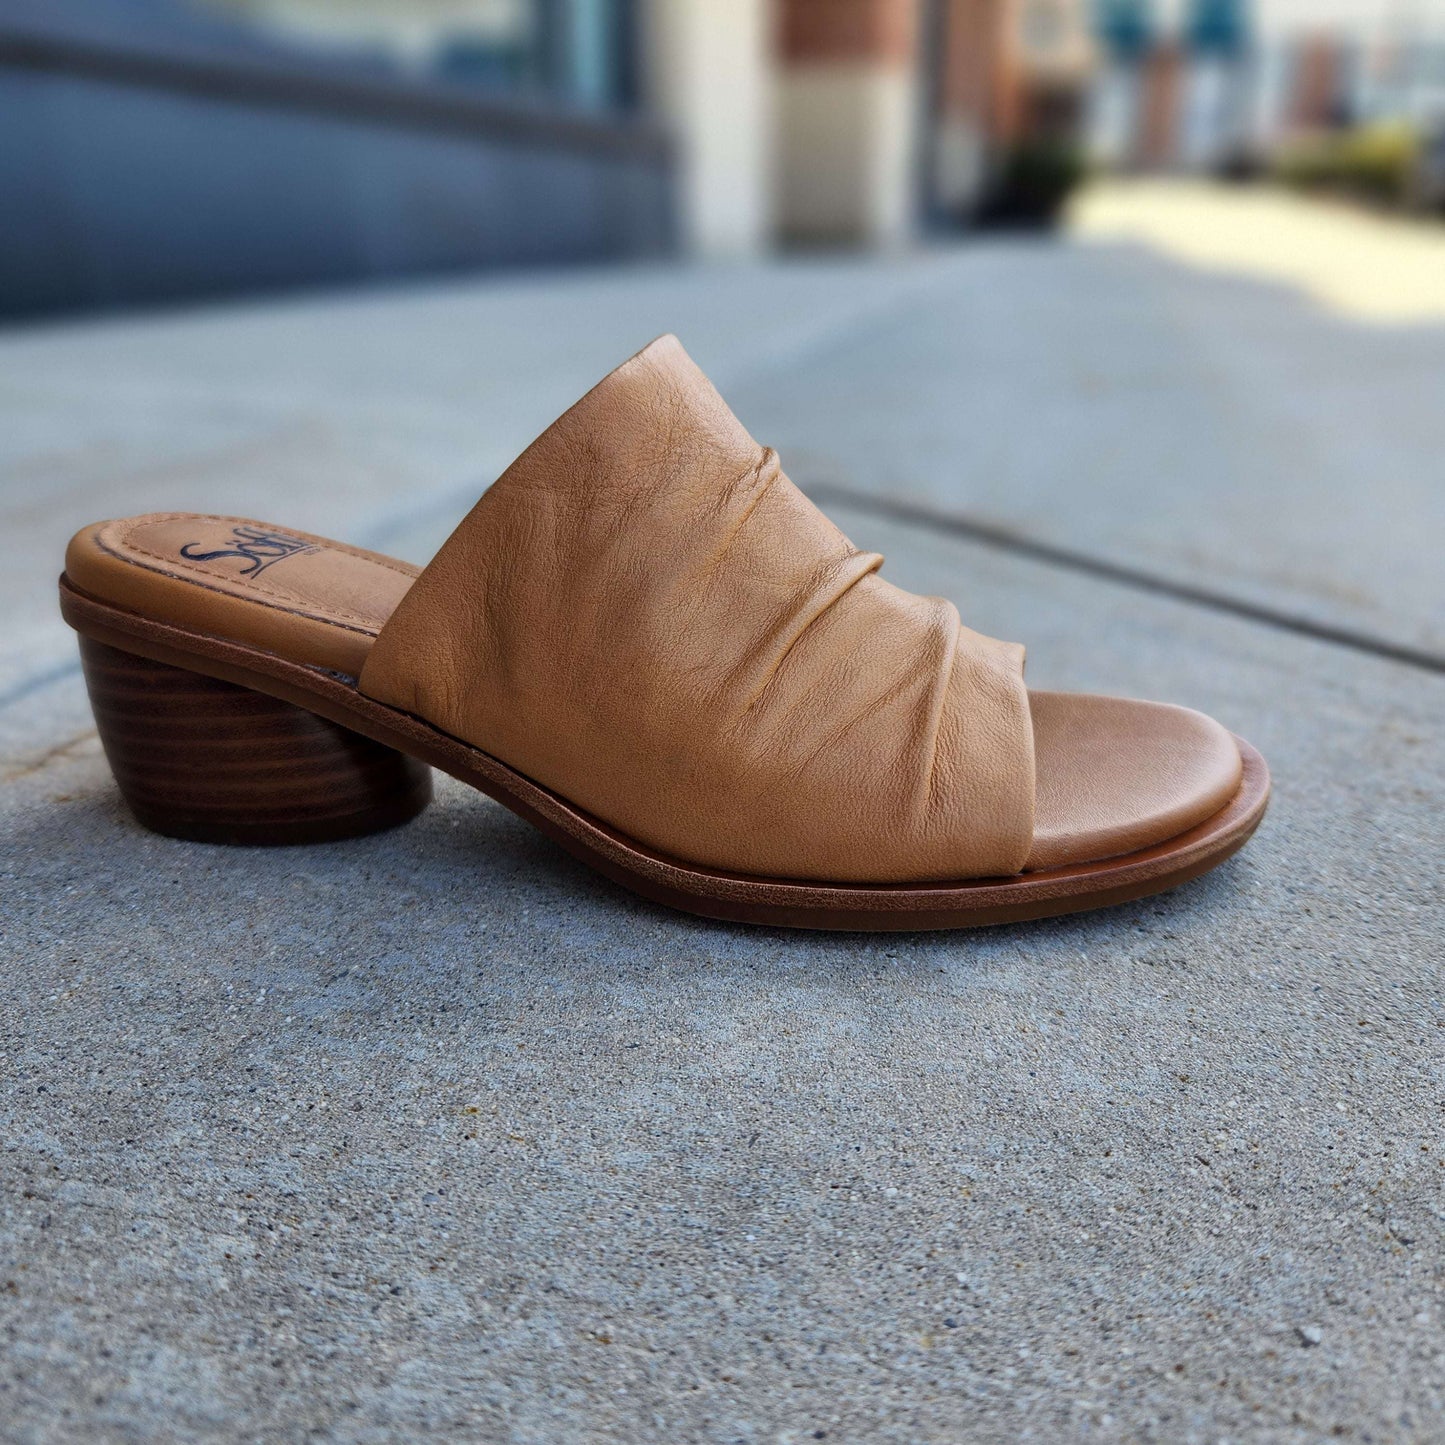 Söfft - Chrissie, sandals, Sofft, Plum Bottom